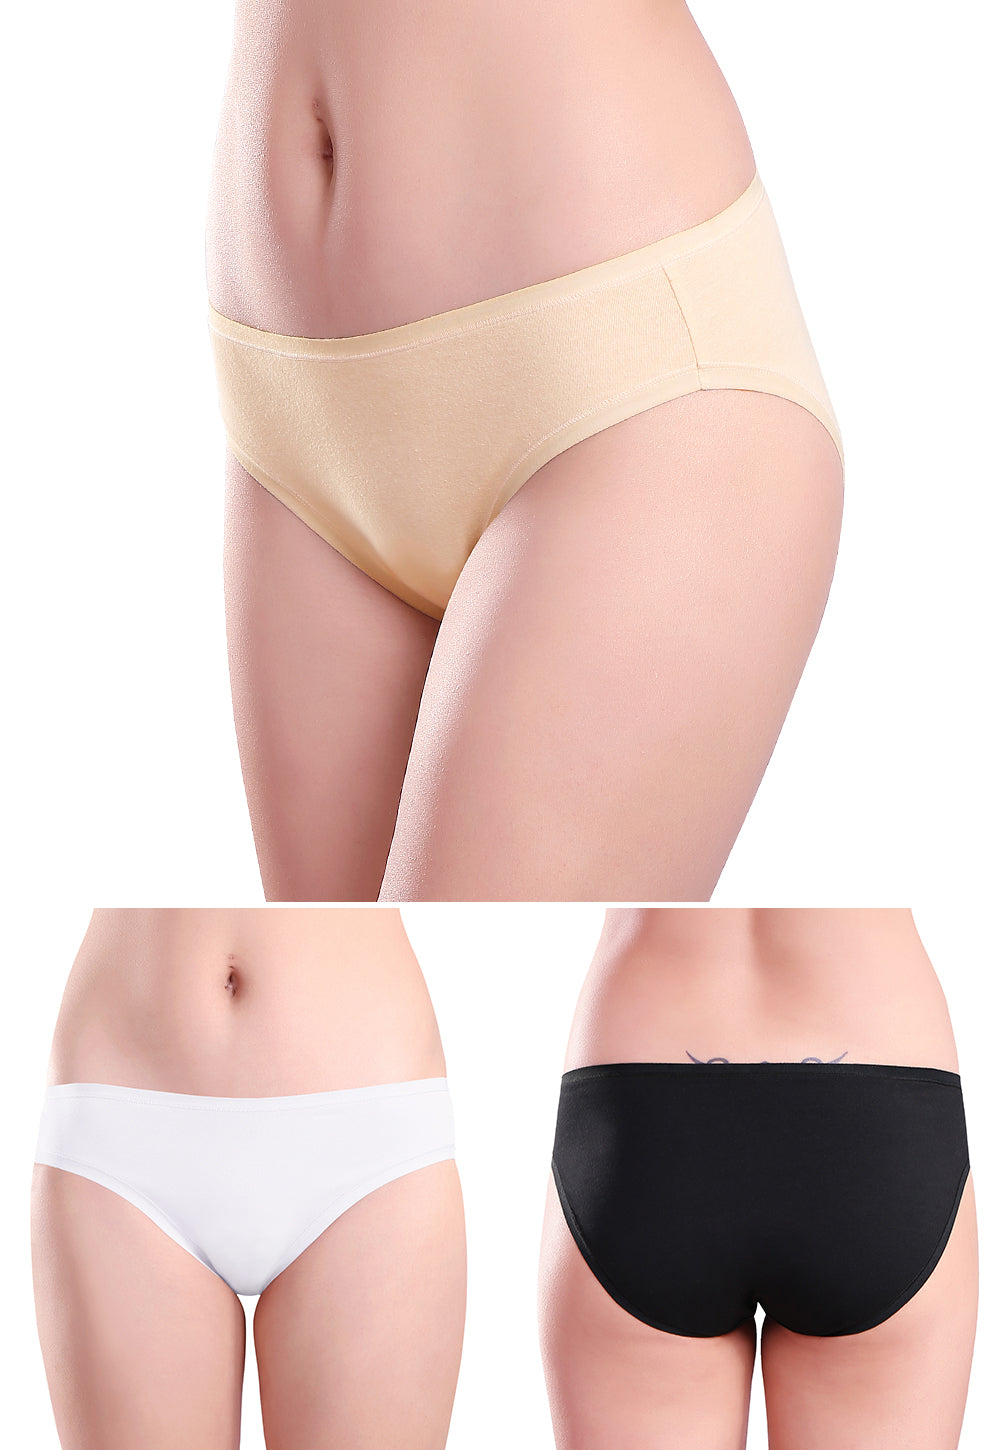 Wealurre Women’s Cotton Bikini Underwear 6 pack - wealurre